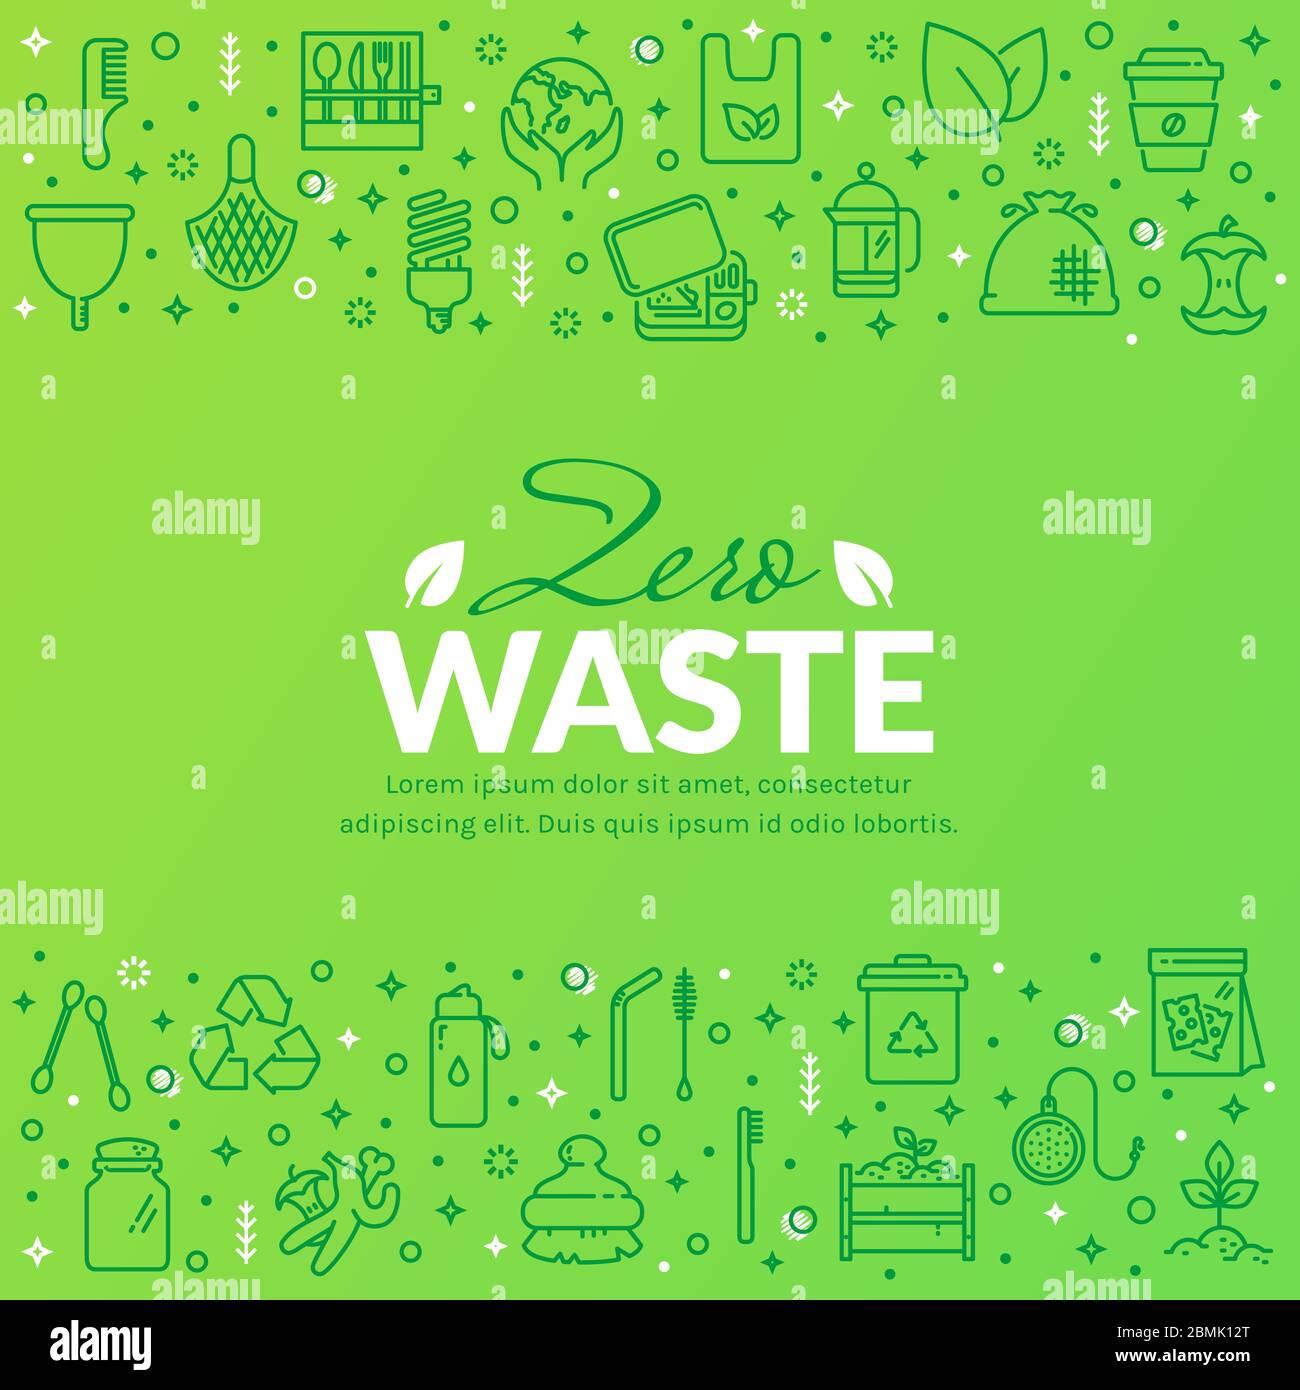 Null-Abfall-Banner mit Linien-Symbolen auf grünem Hintergrund. Recycling, wiederverwendbare Artikel, Save the Planet und Öko Lifestyle-Themen. Vektorvorlage. Stock Vektor